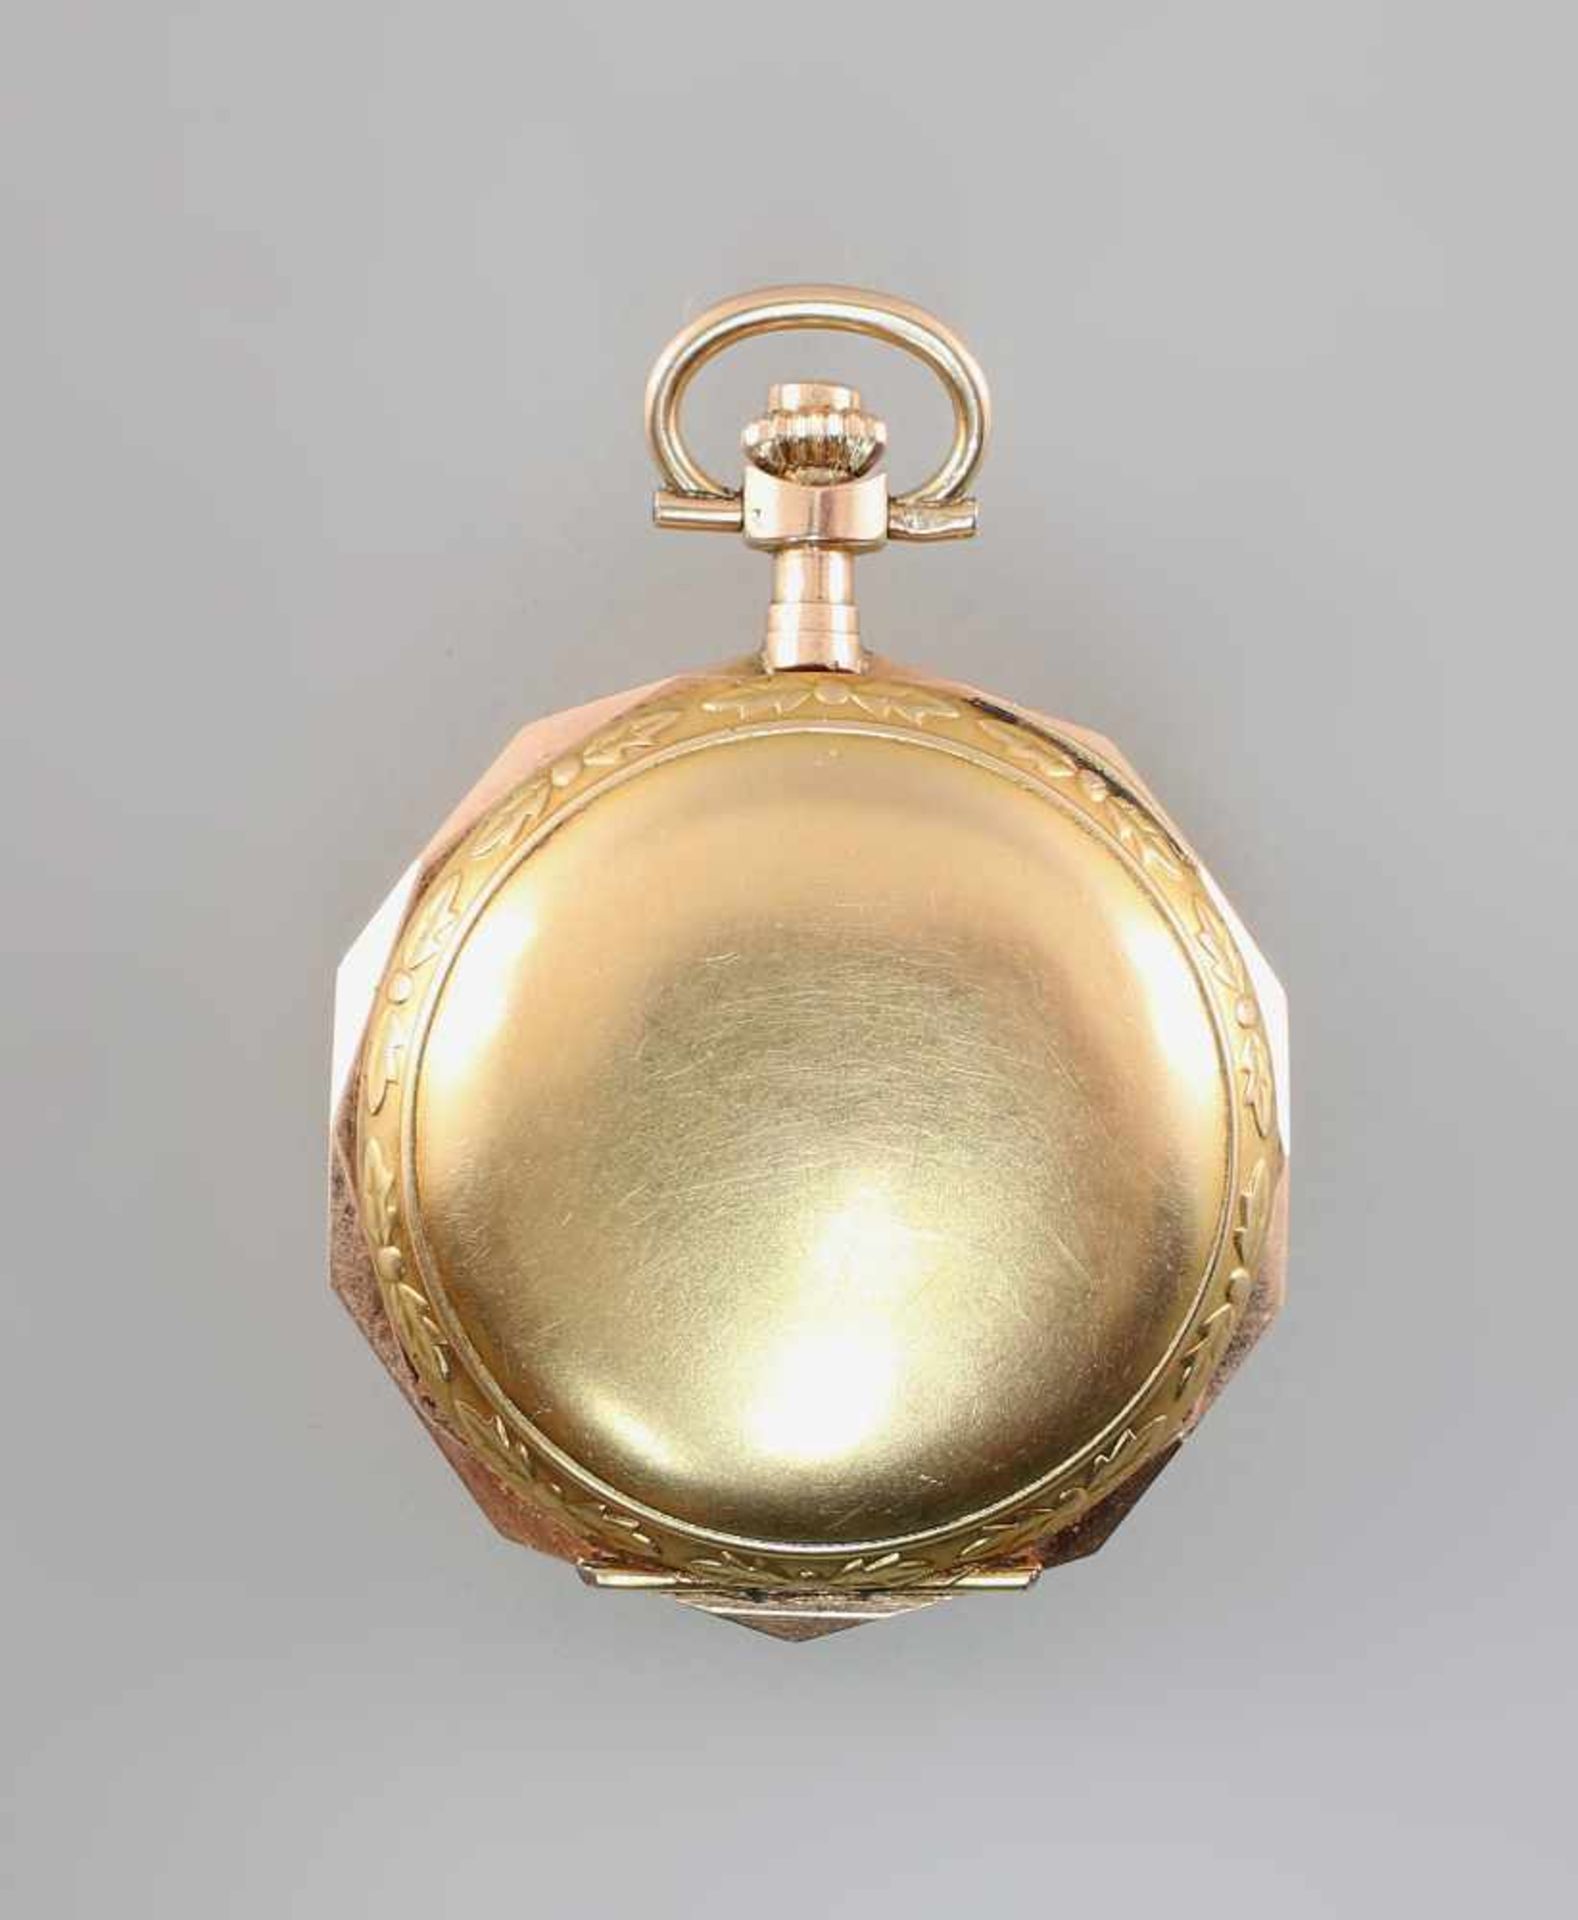 Goldene Savonette Damentaschenuhr Spätbiedermeierum 1880, 585er Gold, alle 3 Deckel gepunzt 14K - Image 3 of 5